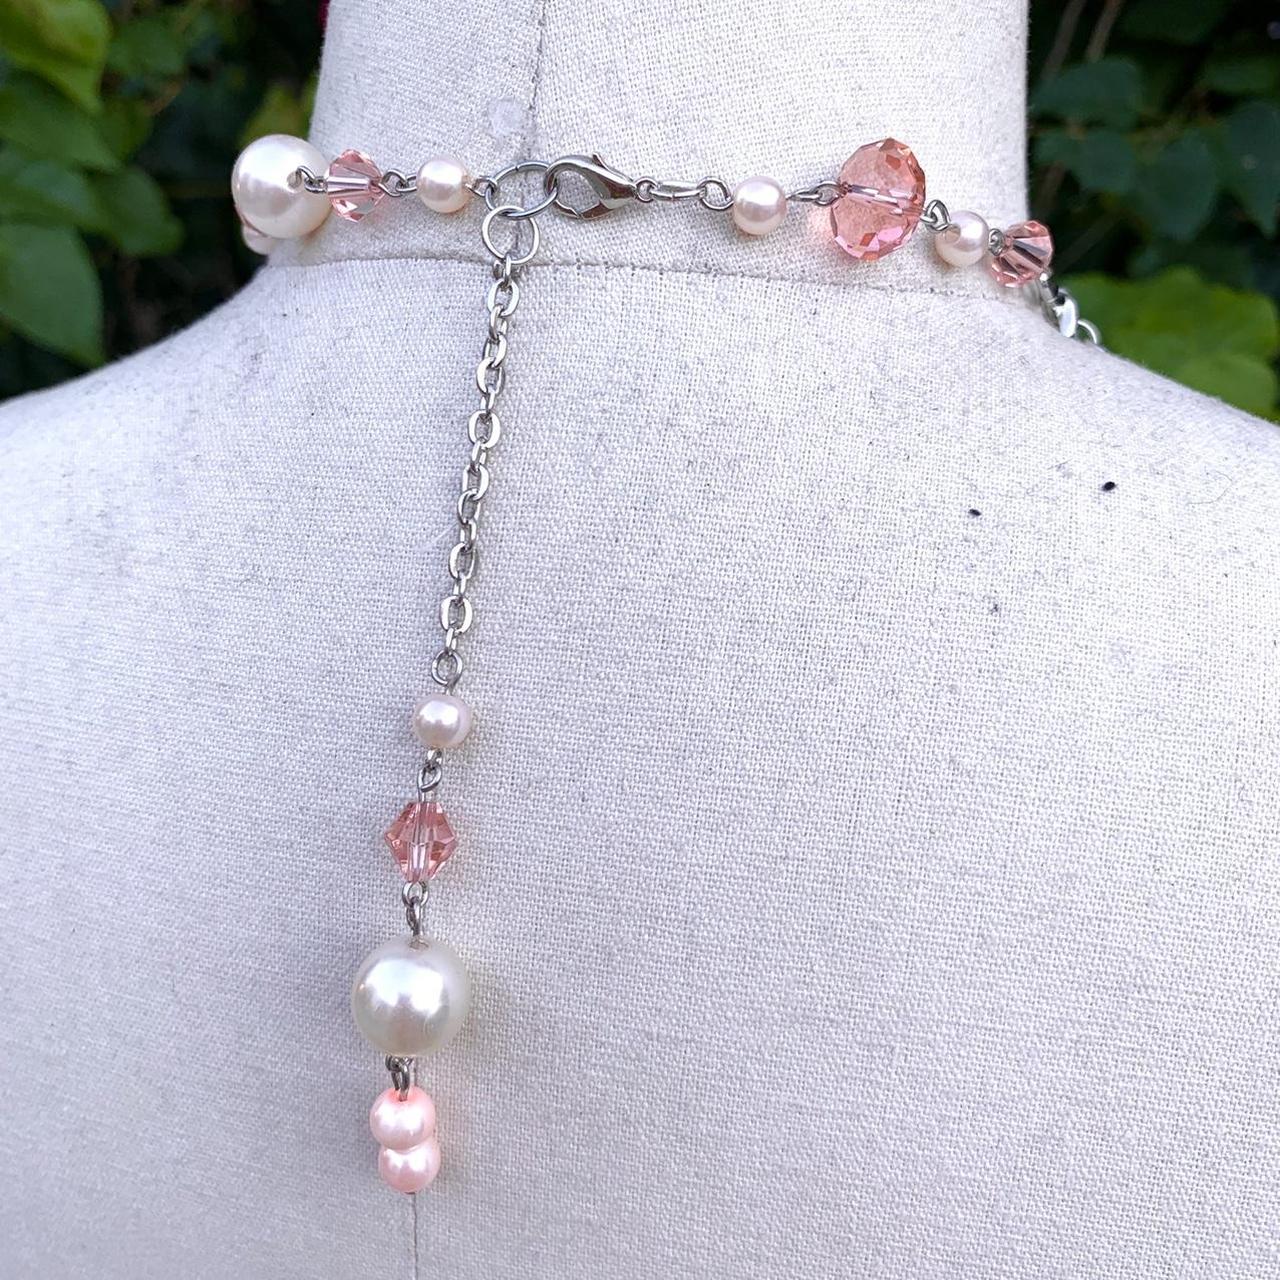 Sugarpill Women's Pink and White Jewellery (4)